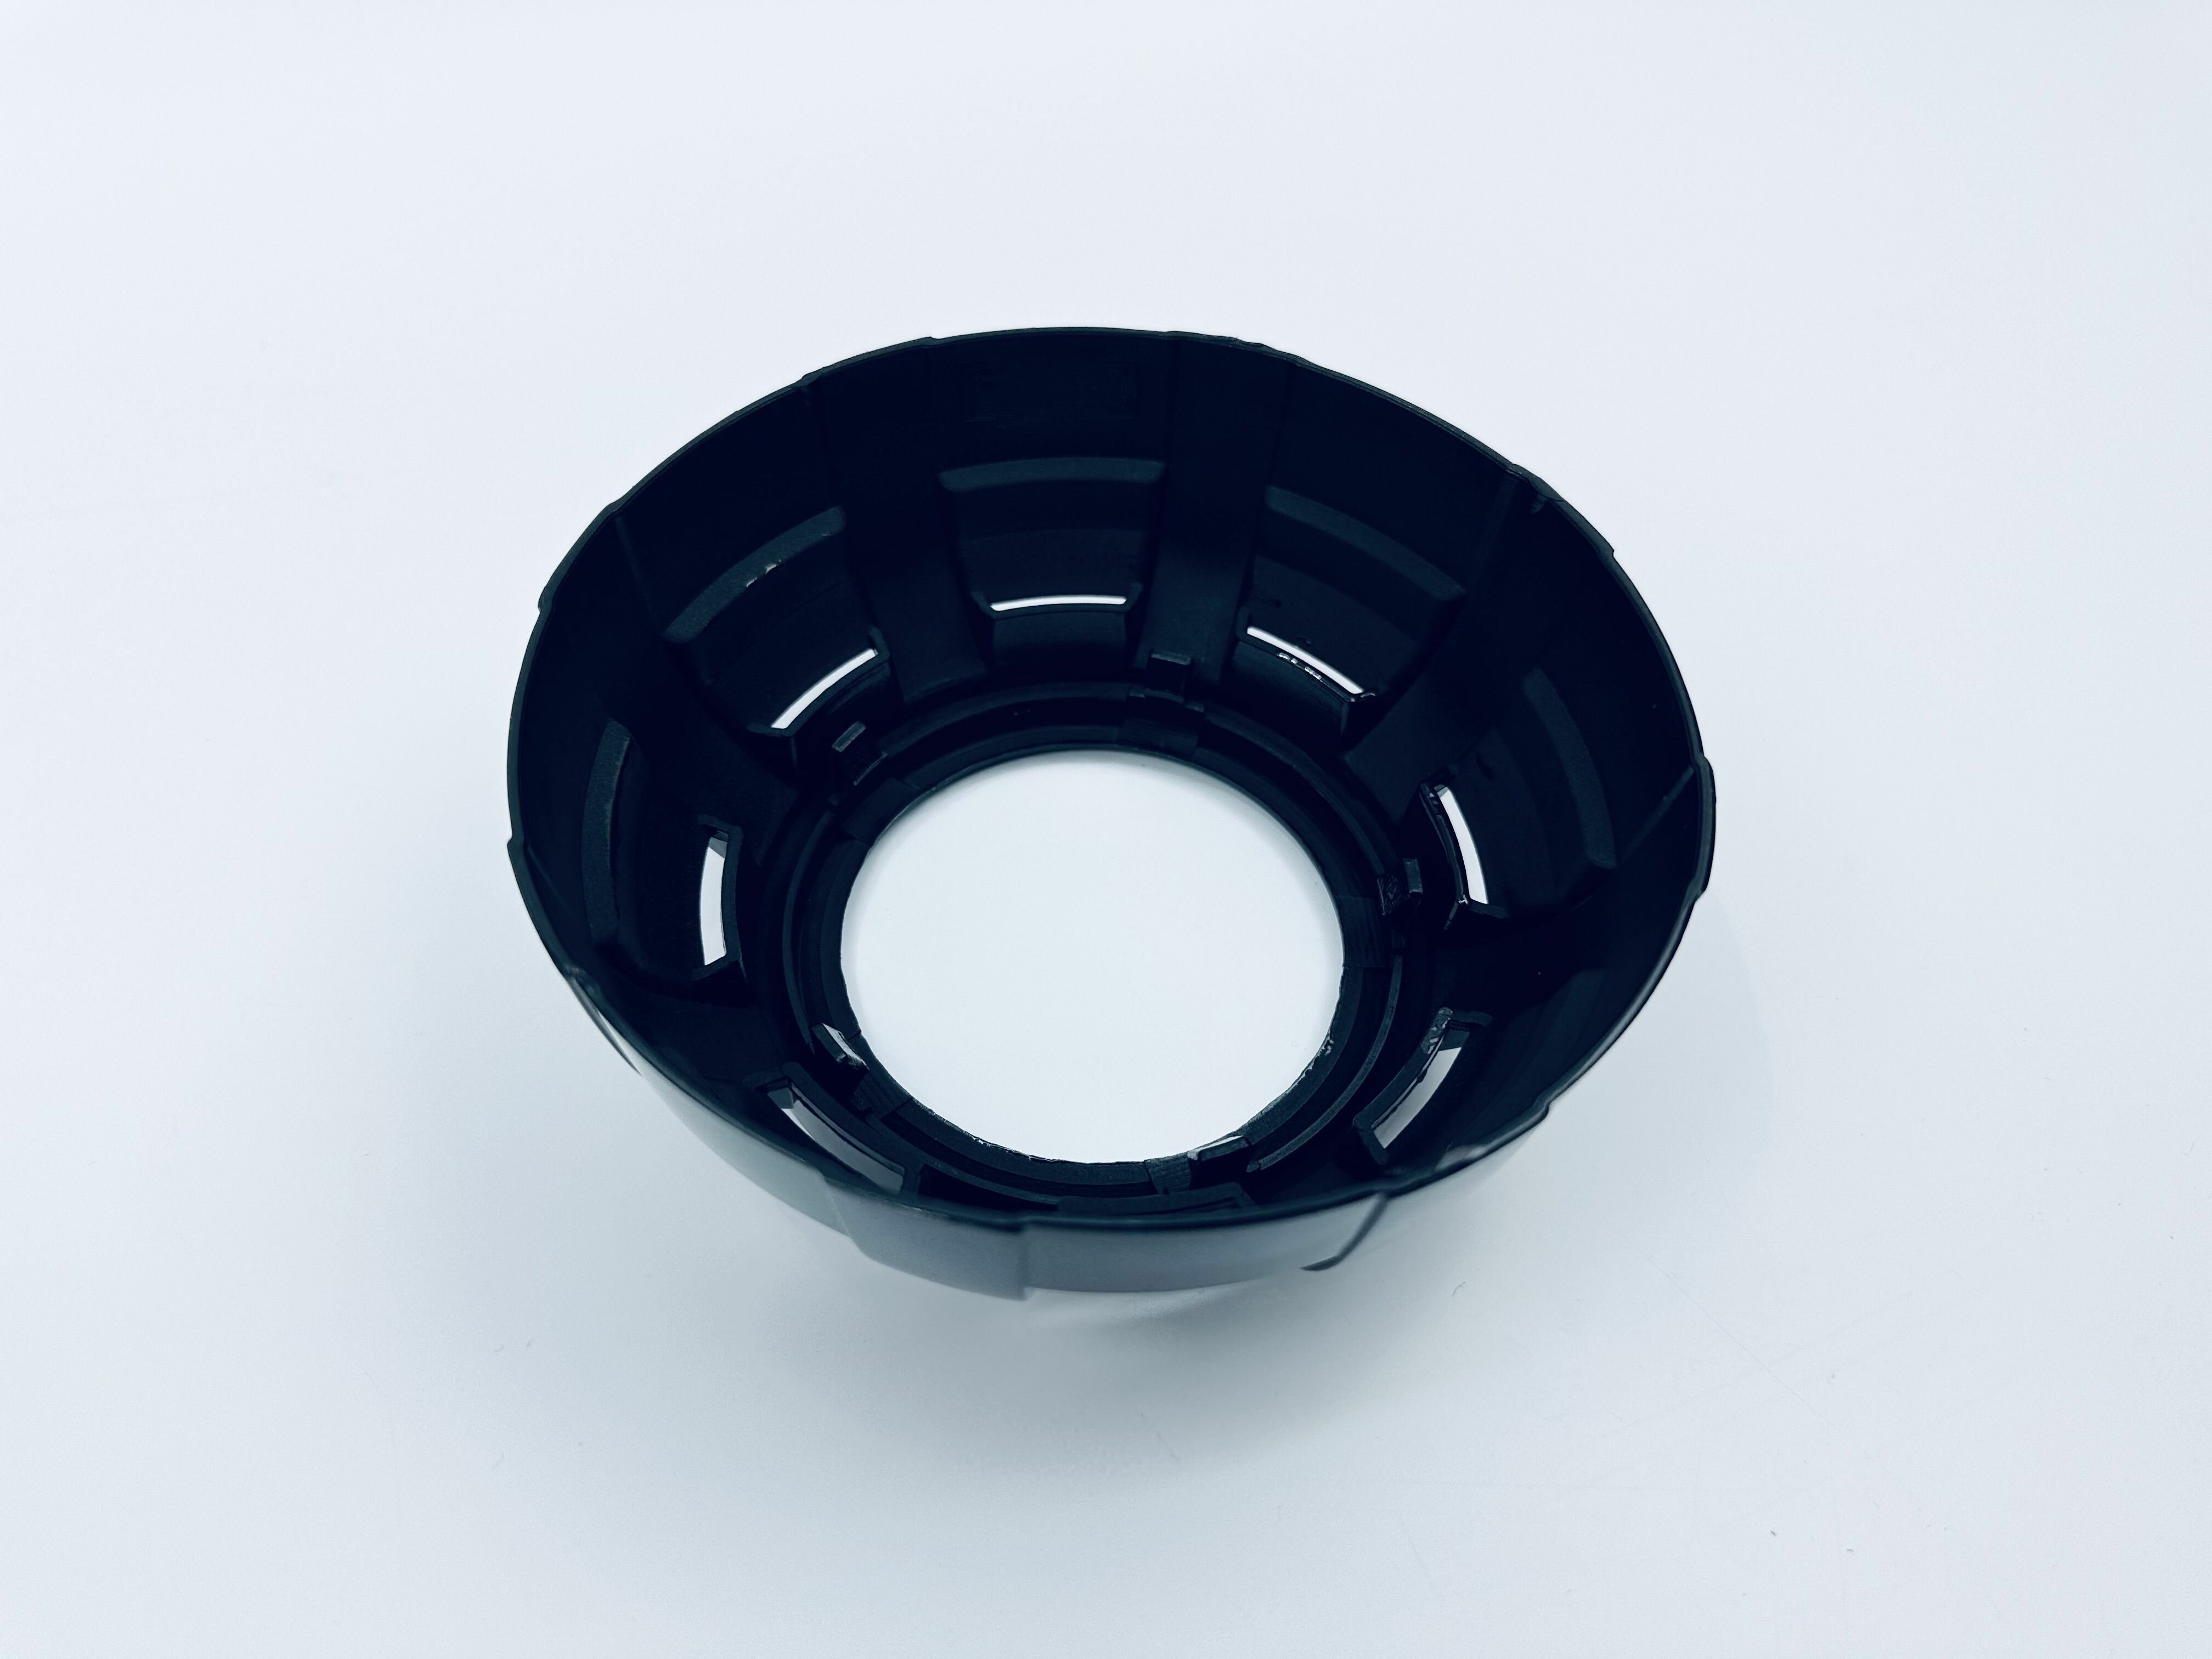 Декоративные бленды (маски) №101B для линз 2.8" и 3.0", цвет черный, комплект 2 шт